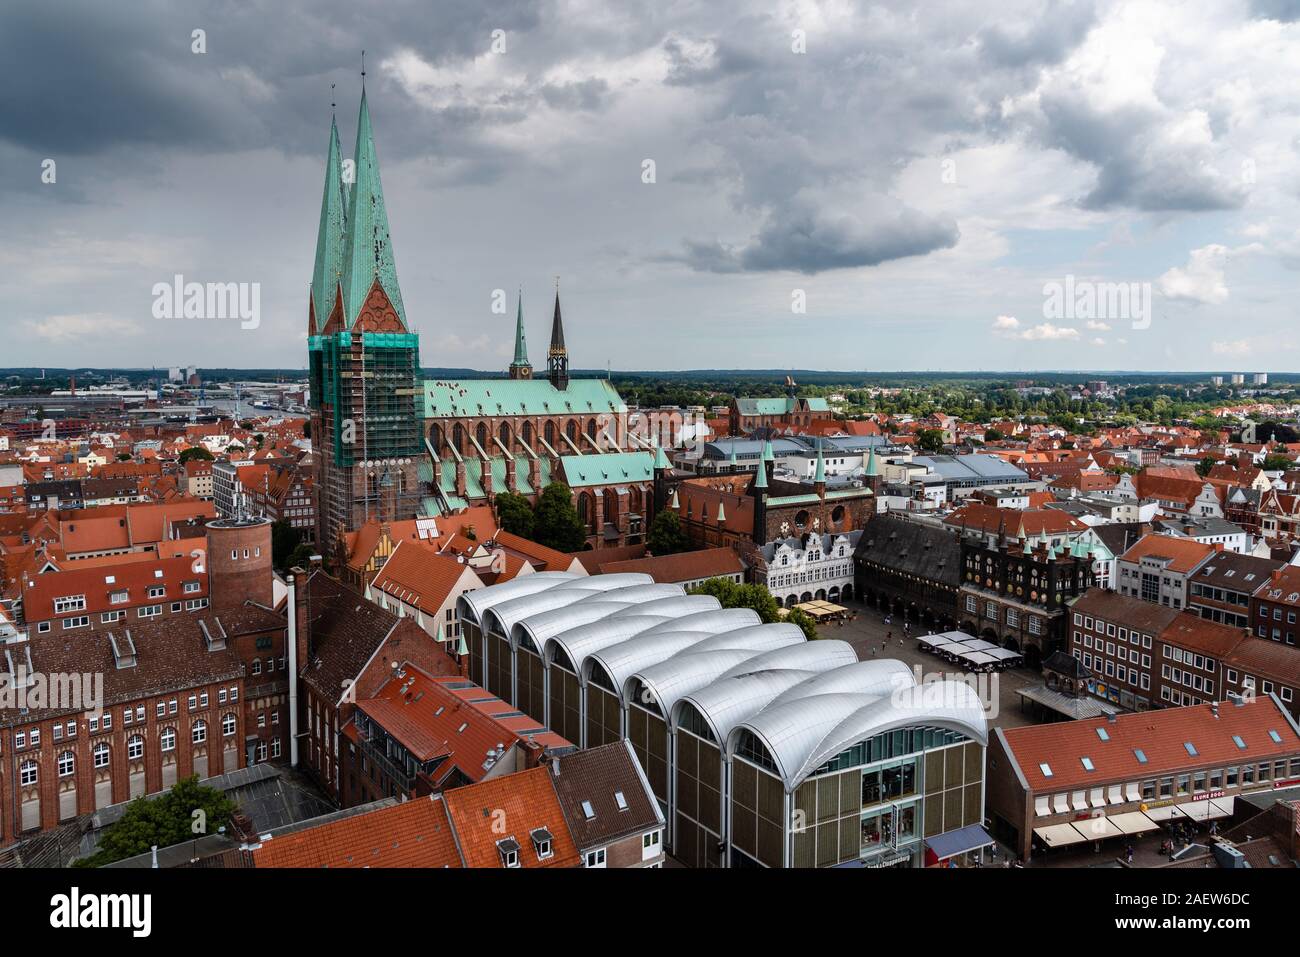 Lubeck, Alemania - 3 de agosto, 2019: Vista aérea del centro histórico de la ciudad hanseatica Foto de stock